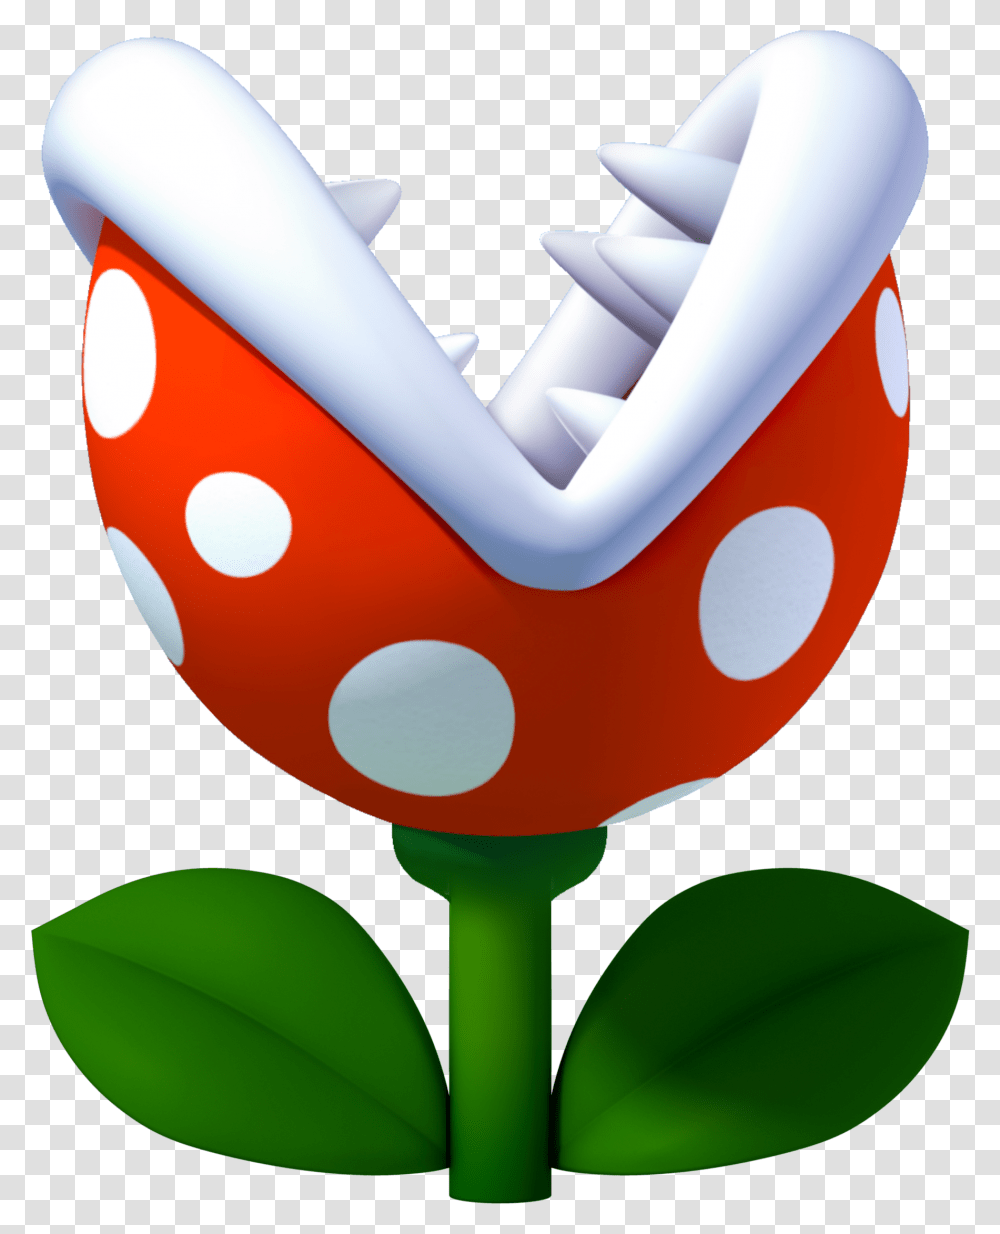 Download Mario Flower Super Bros Petal Free Image Planta Carnivora De Mario Bros, Blossom, Texture, Photography, Egg Transparent Png